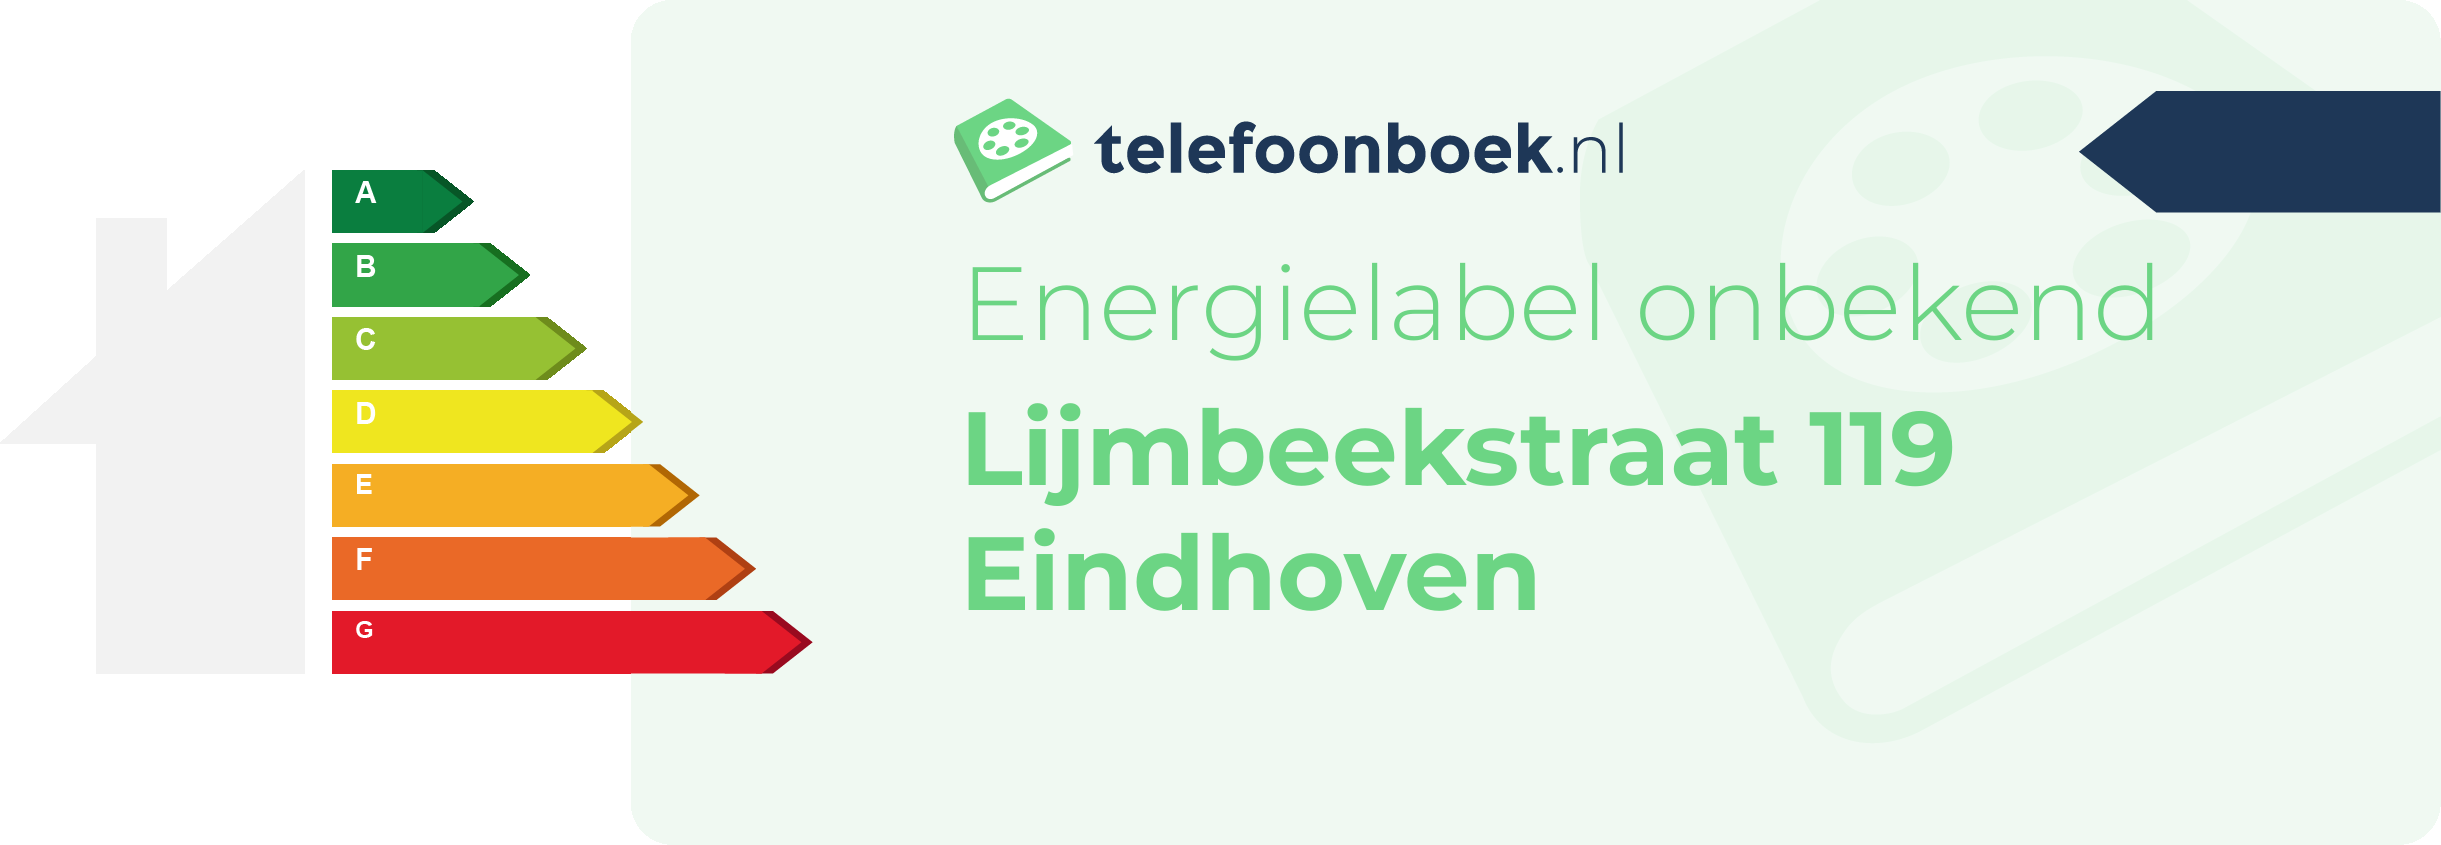 Energielabel Lijmbeekstraat 119 Eindhoven